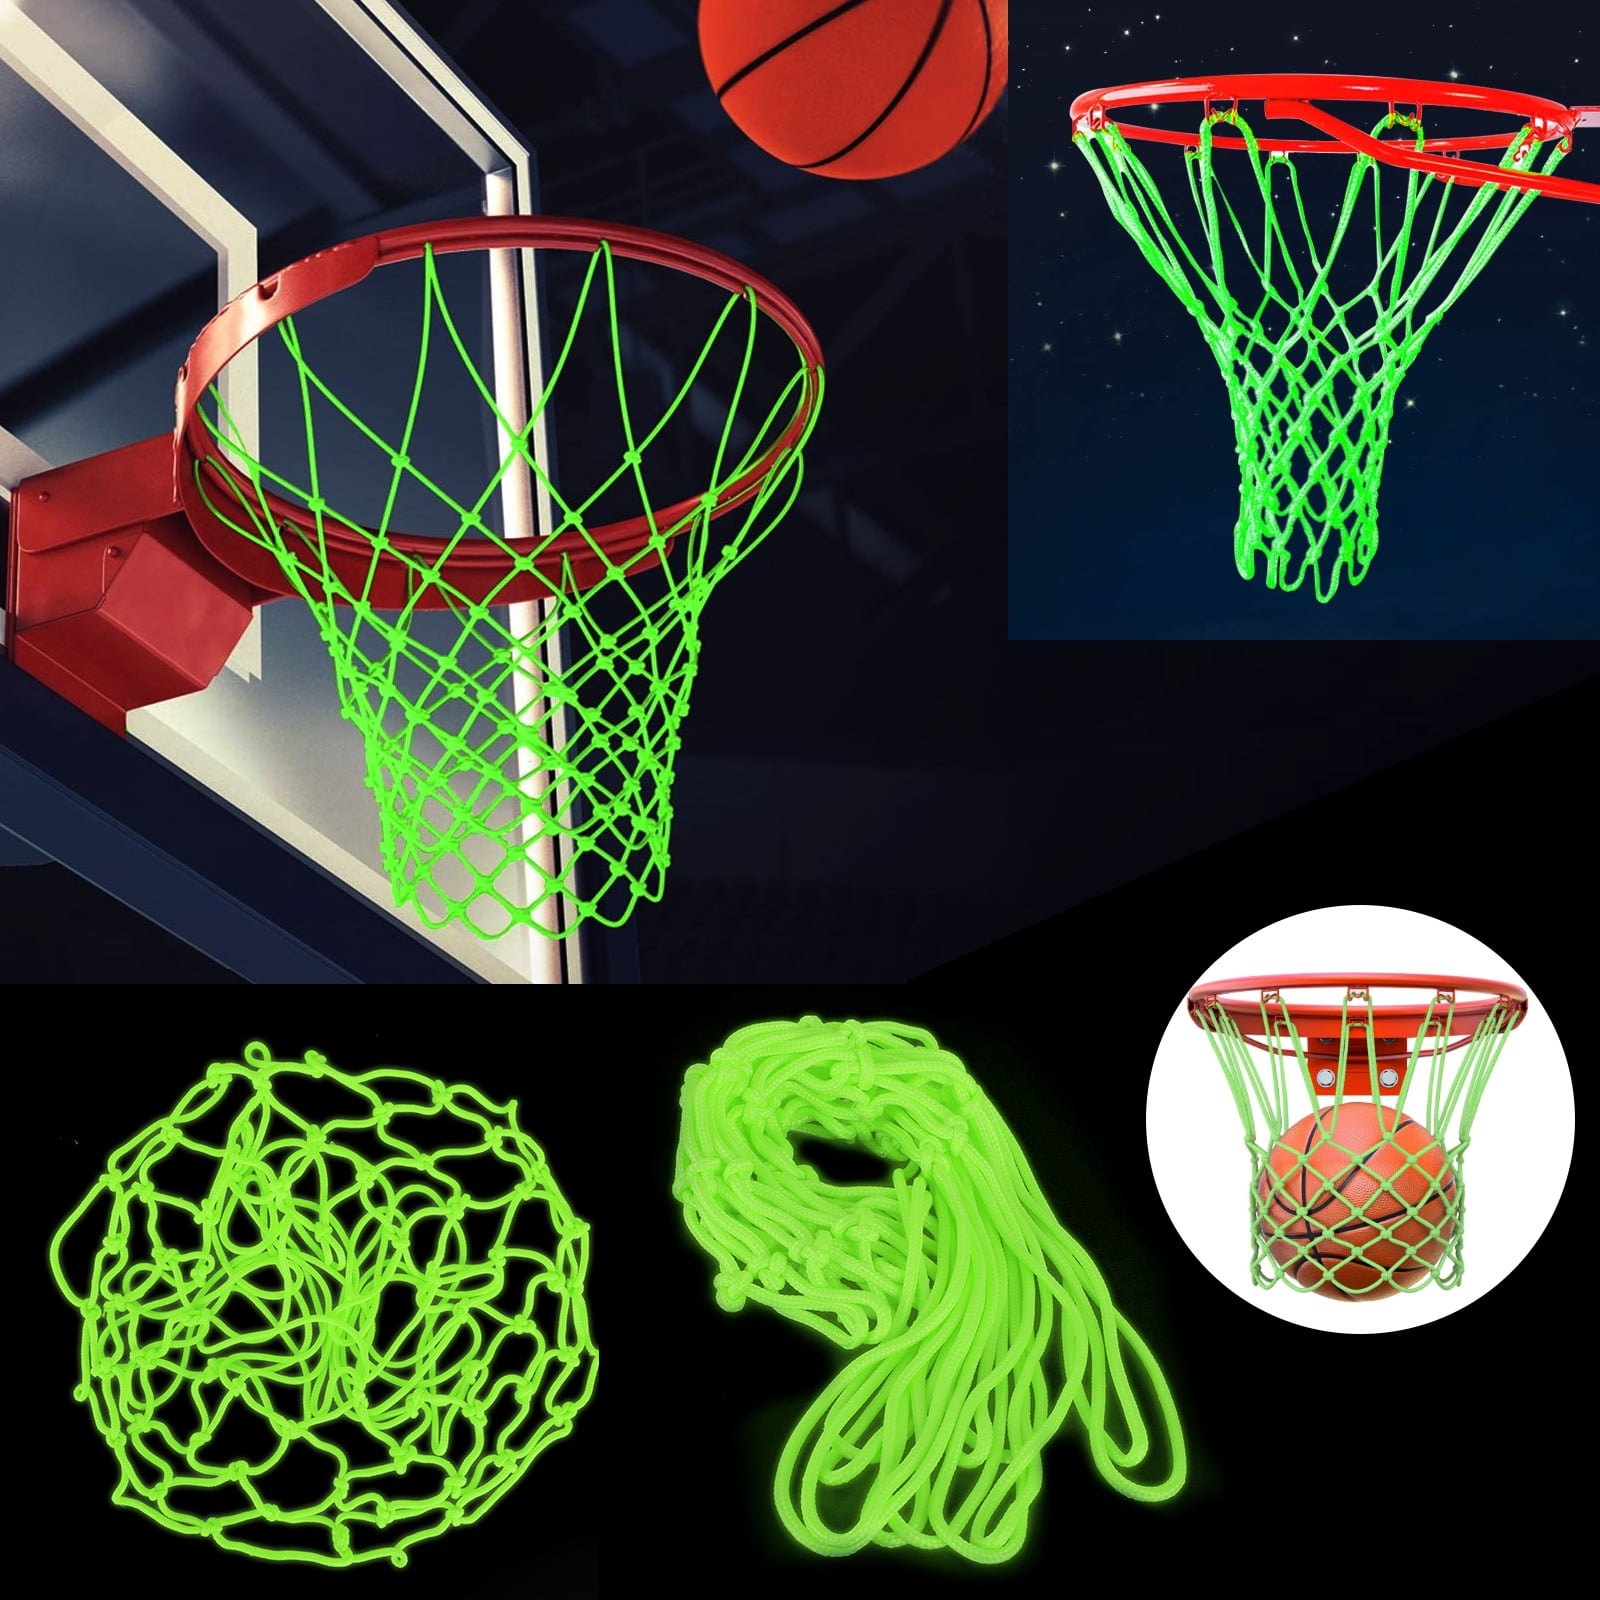 Details about   Green Fluorescent Basketball Nets Luminous Basketball Net Sports Night D5P9 